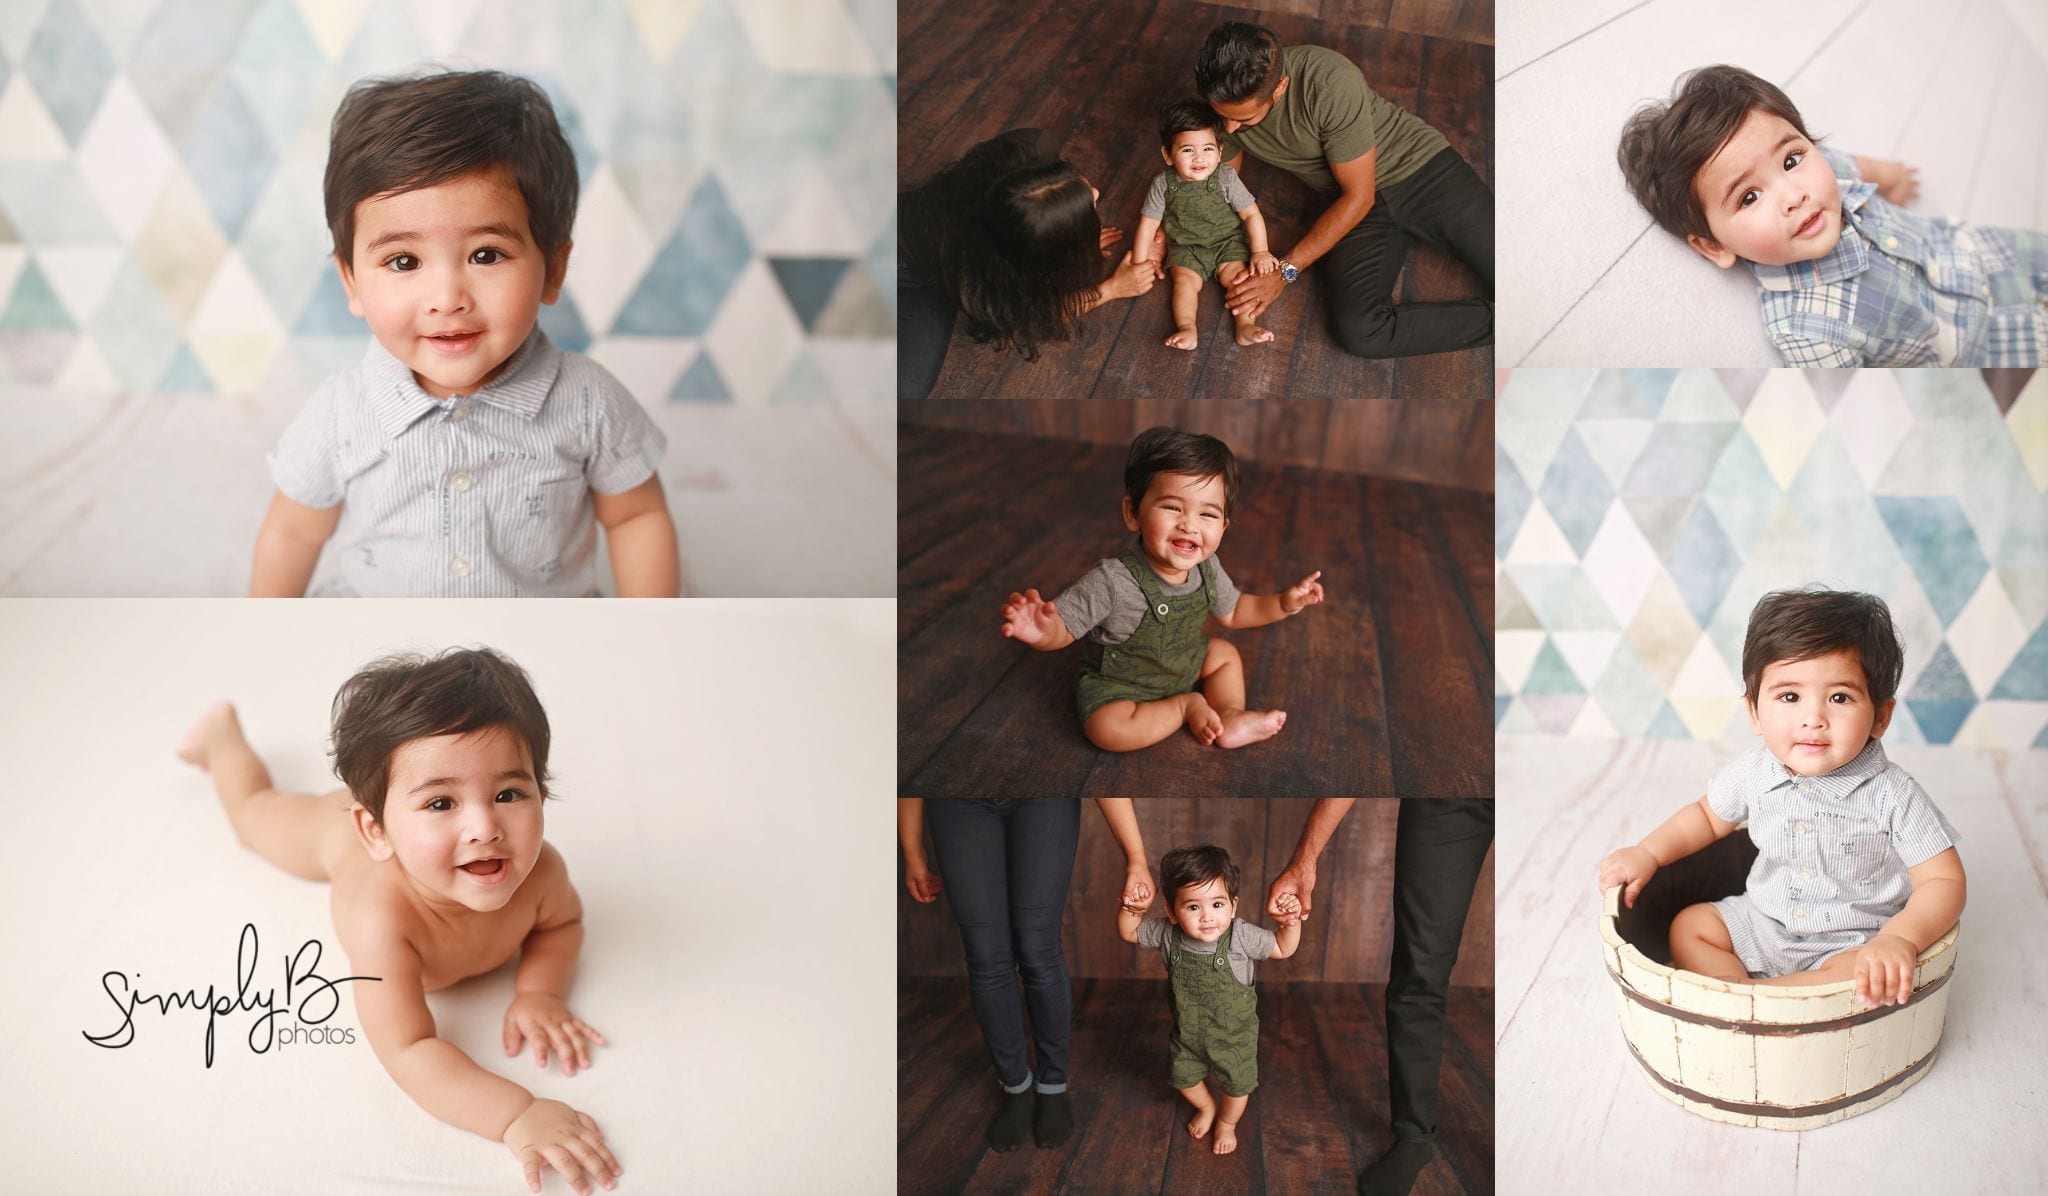 edmonton baby photography prop studio 6 month old milestone